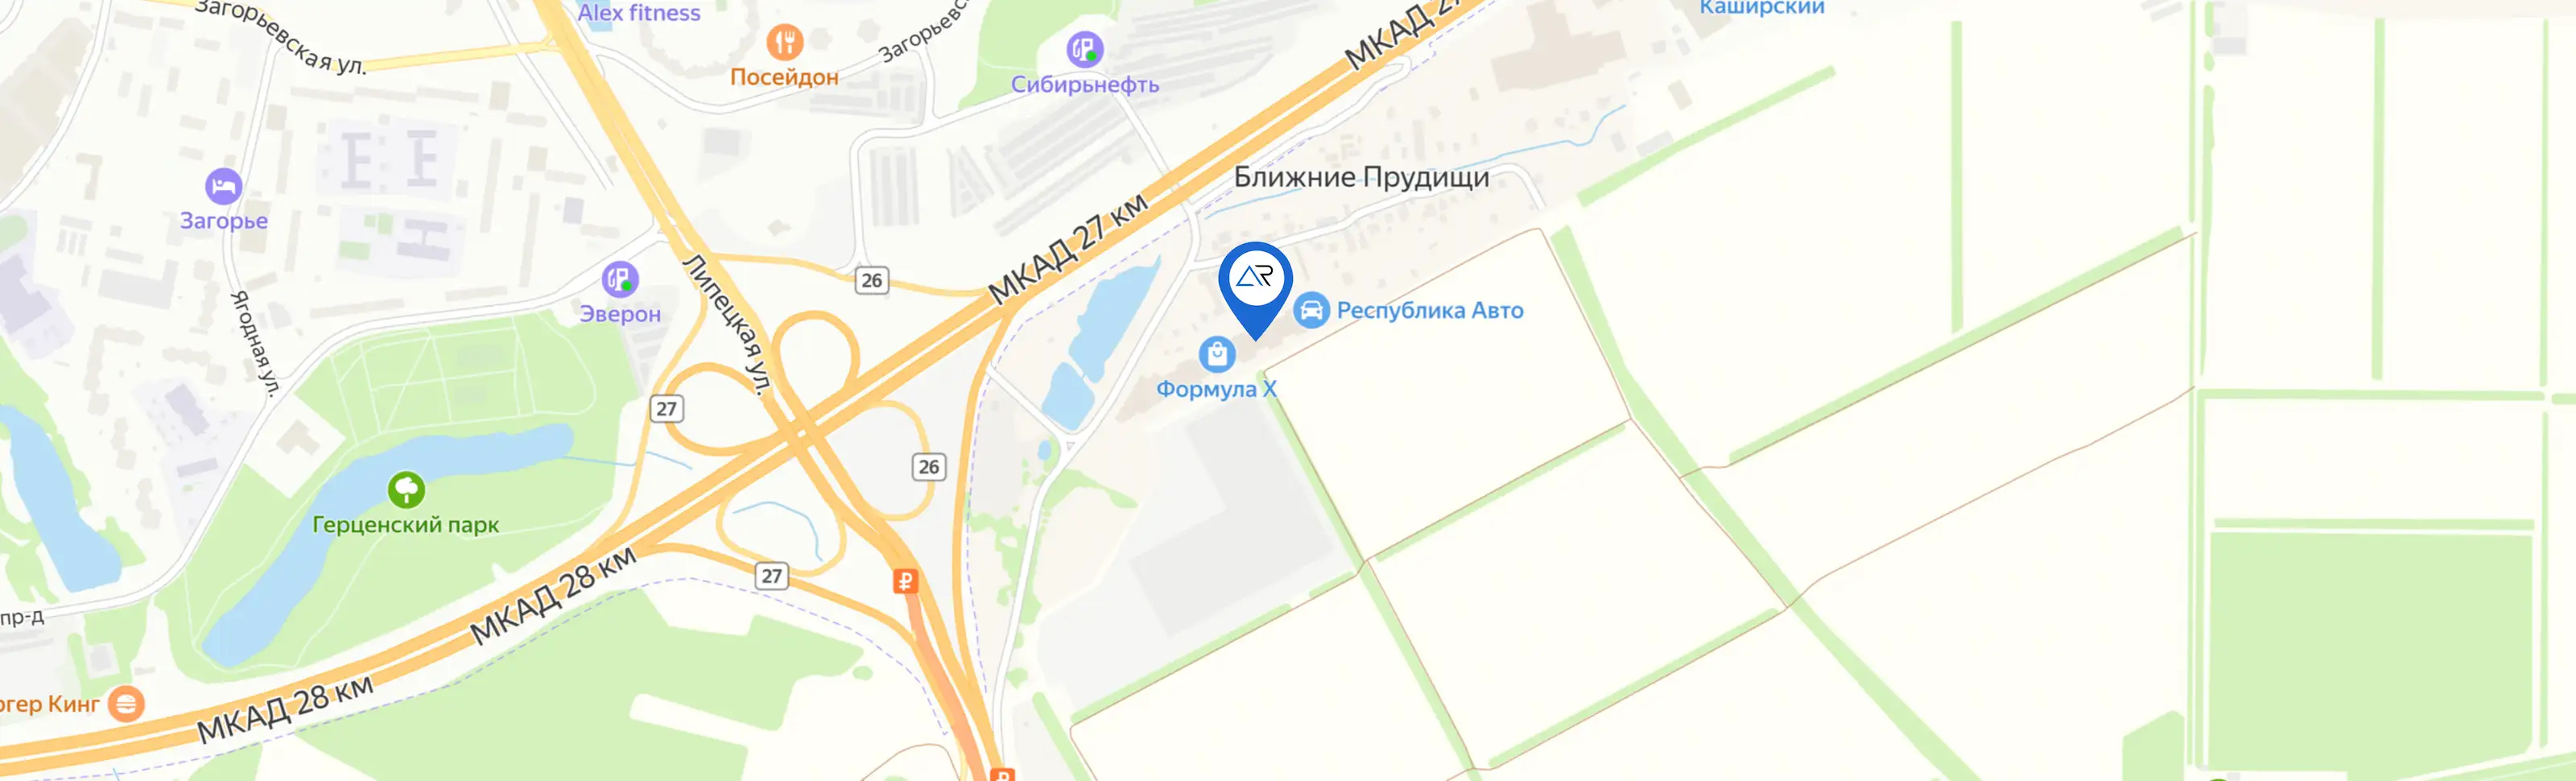 Адрес Armada Cars: Москва, 27 км МКАД (внешняя сторона)